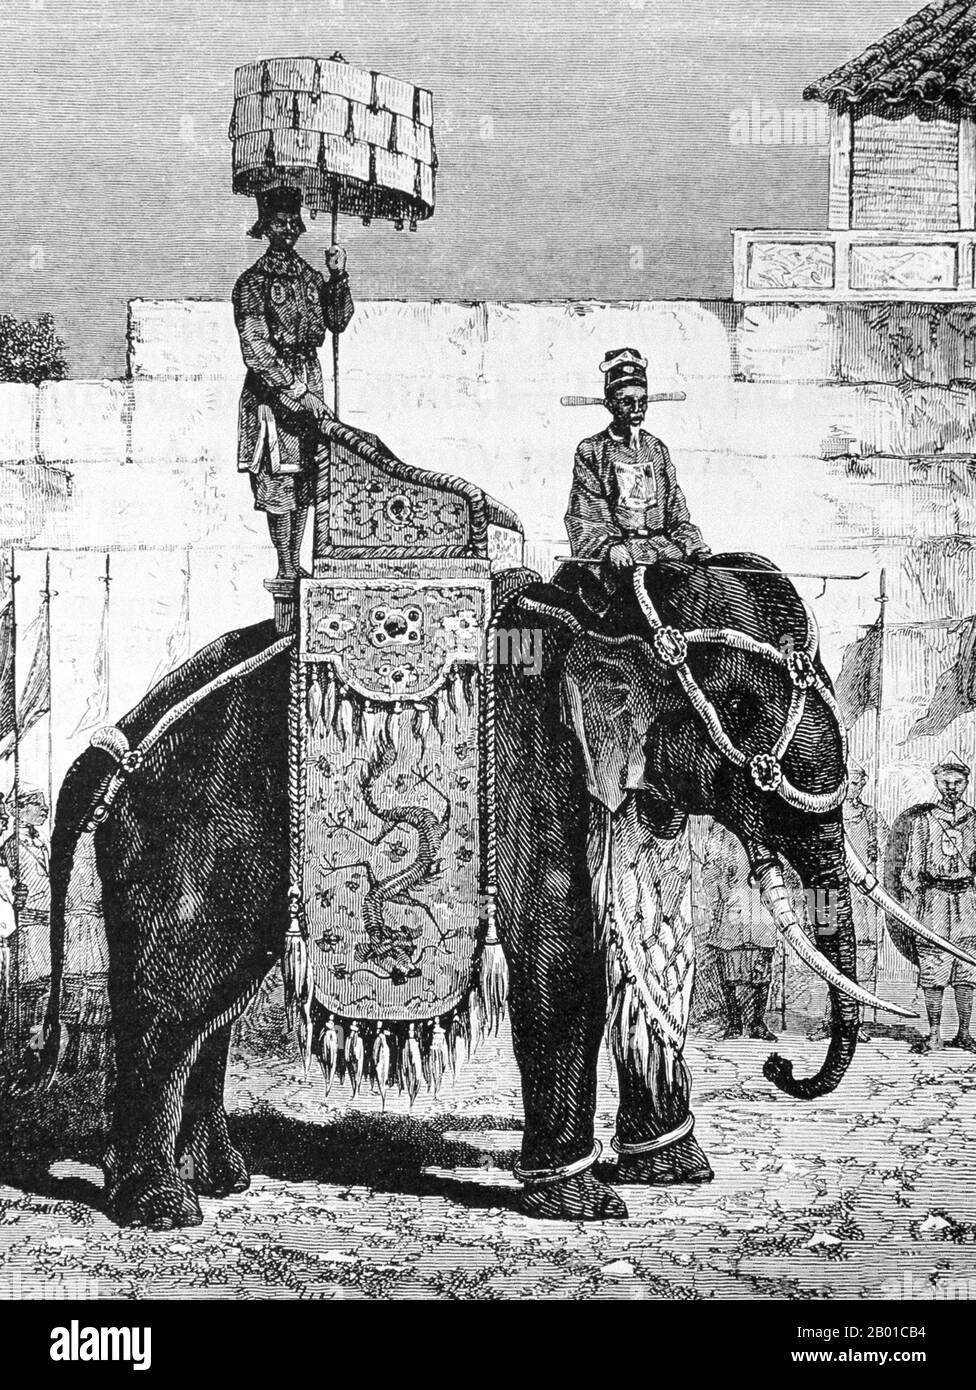 Vietnam : un éléphant richement caparonné de la cour royale de Hue. Gravure de Paul Adolphe Kauffmann (8 juillet 1849 - 20 février 1940), 1878. Huế est à l’origine la capitale des seigneurs Nguyễn, une dynastie féodale qui a dominé une grande partie du sud du Vietnam entre 17th et 19th. En 1775, quand Trịnh Sâm l'a capturé, il était connu sous le nom de Phú Xuân. En 1802, Nguyễn Phúc Ánh (plus tard empereur Gia long) réussit à établir son contrôle sur l'ensemble du Vietnam, faisant ainsi Huế la capitale nationale. Huế a été la capitale nationale jusqu'en 1945. Banque D'Images